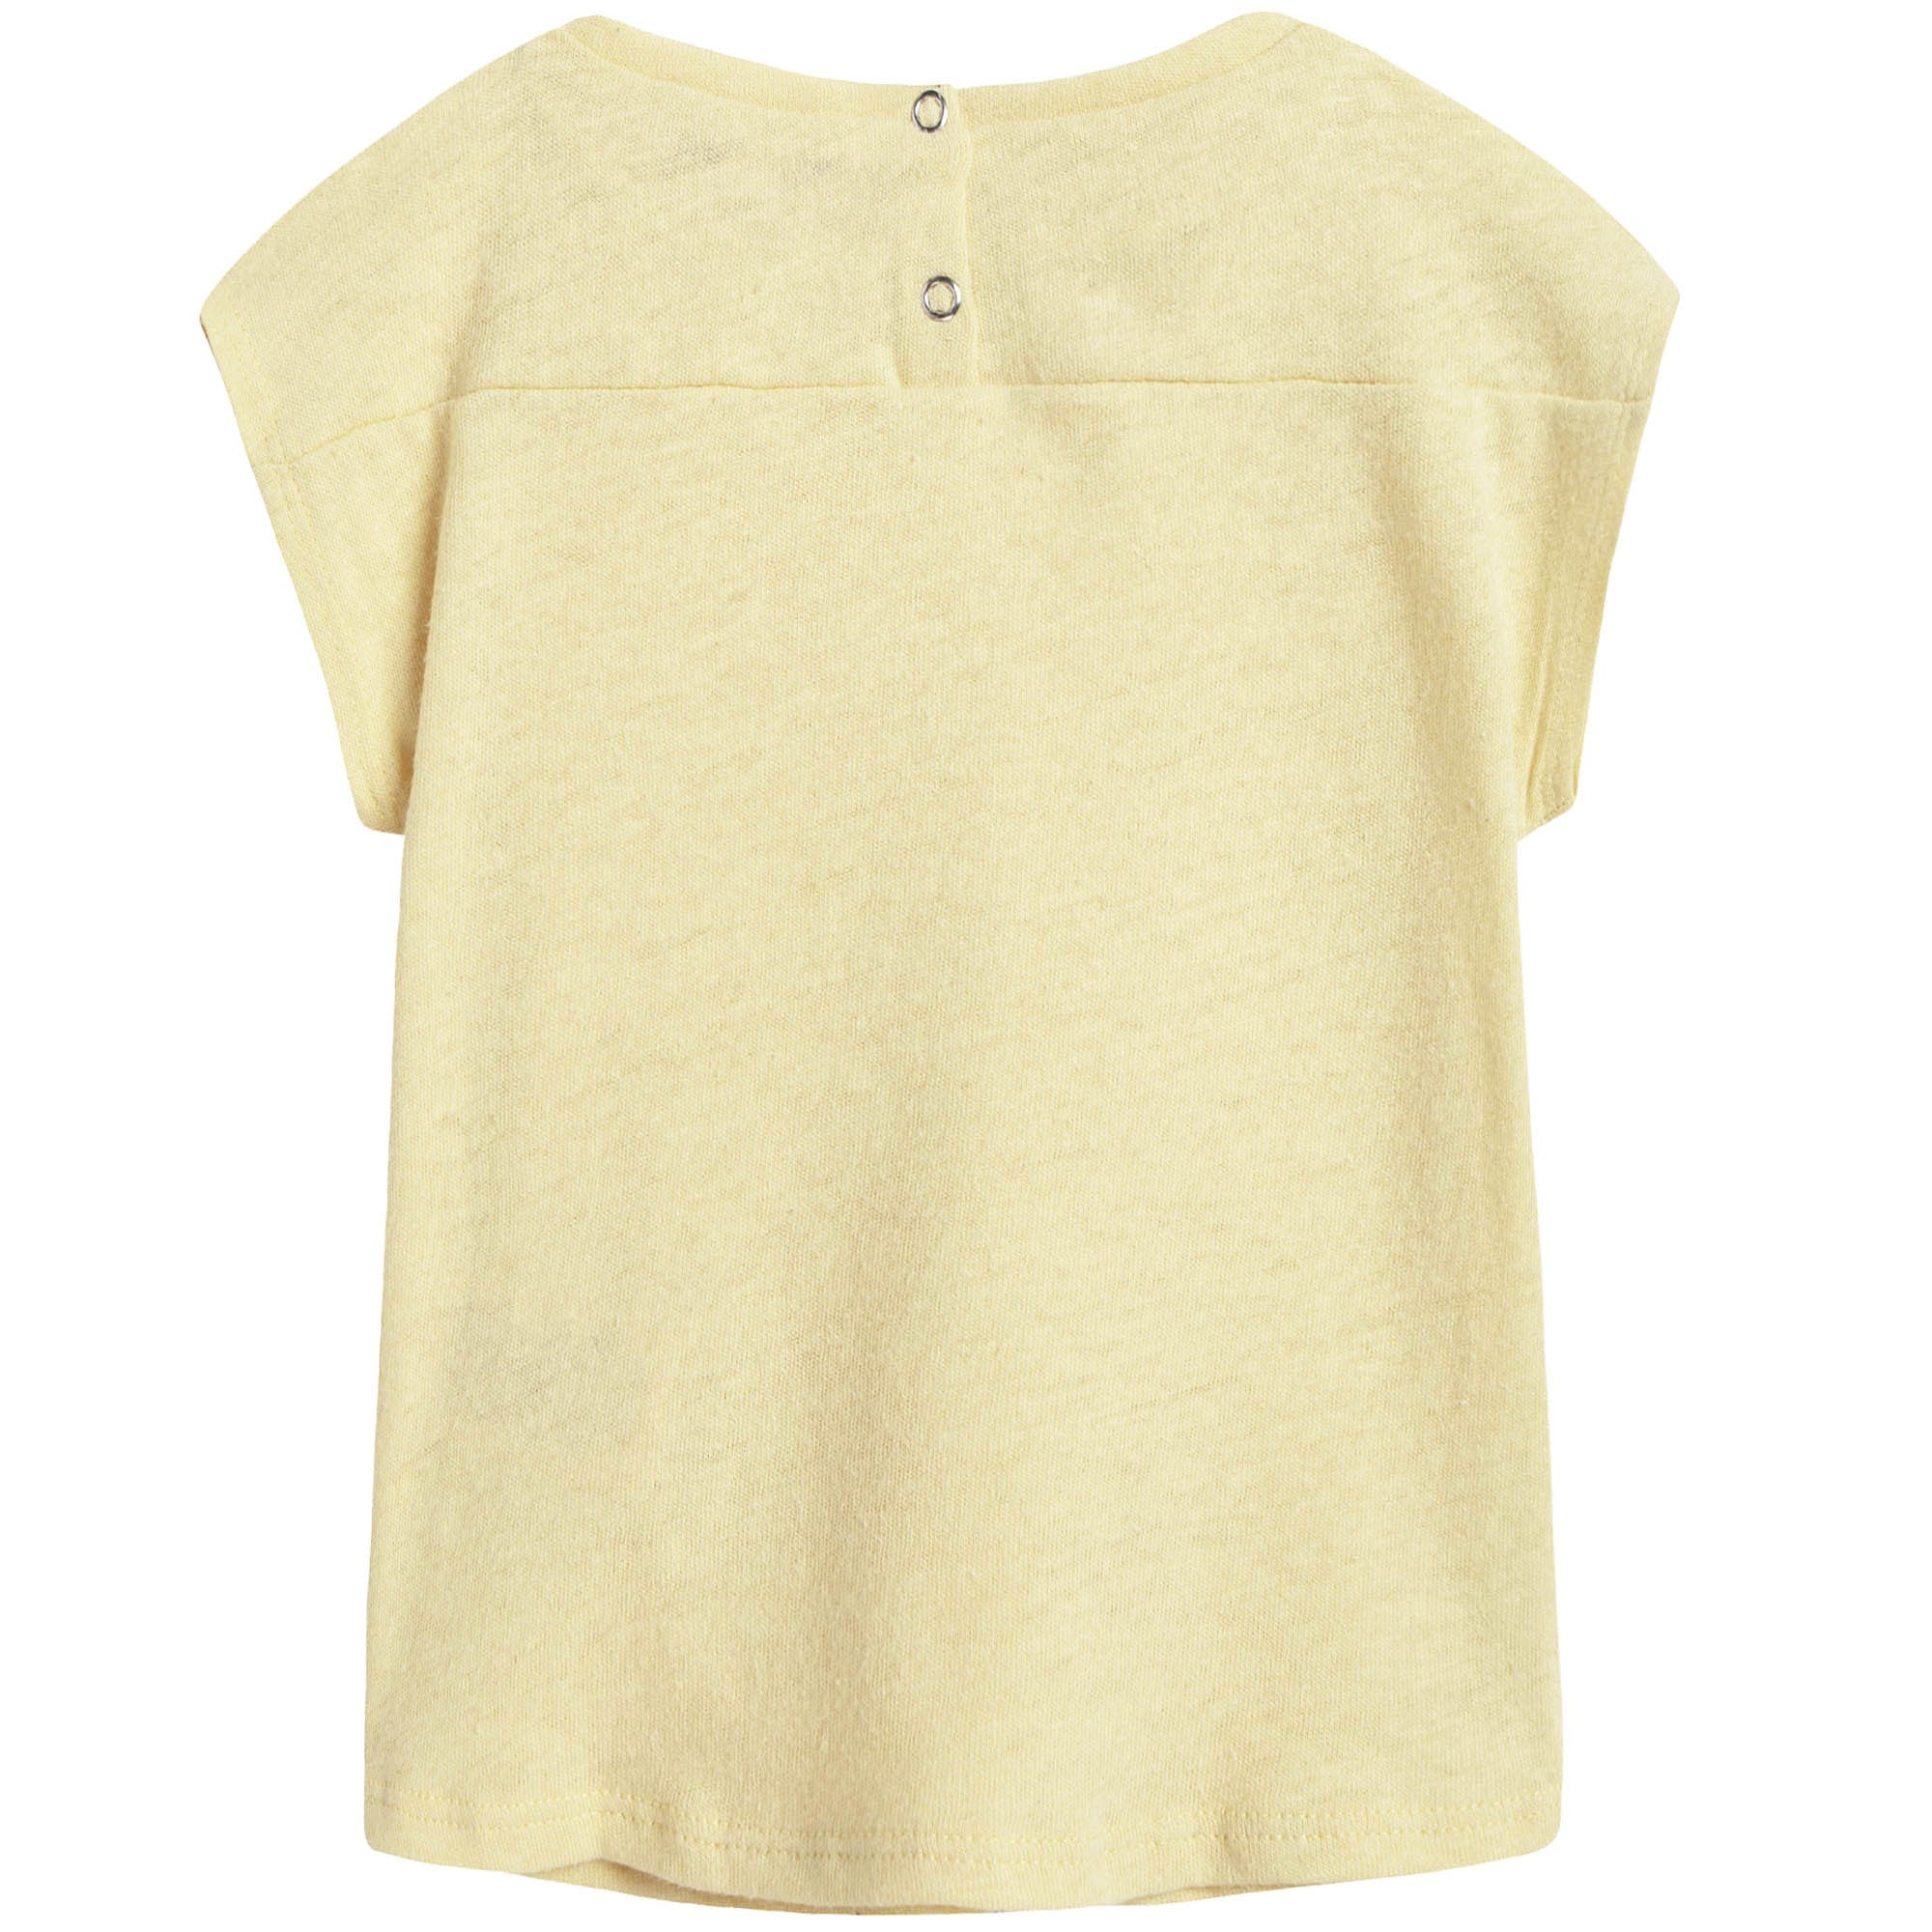 Baby Girls Yellow Cotton T-shirt